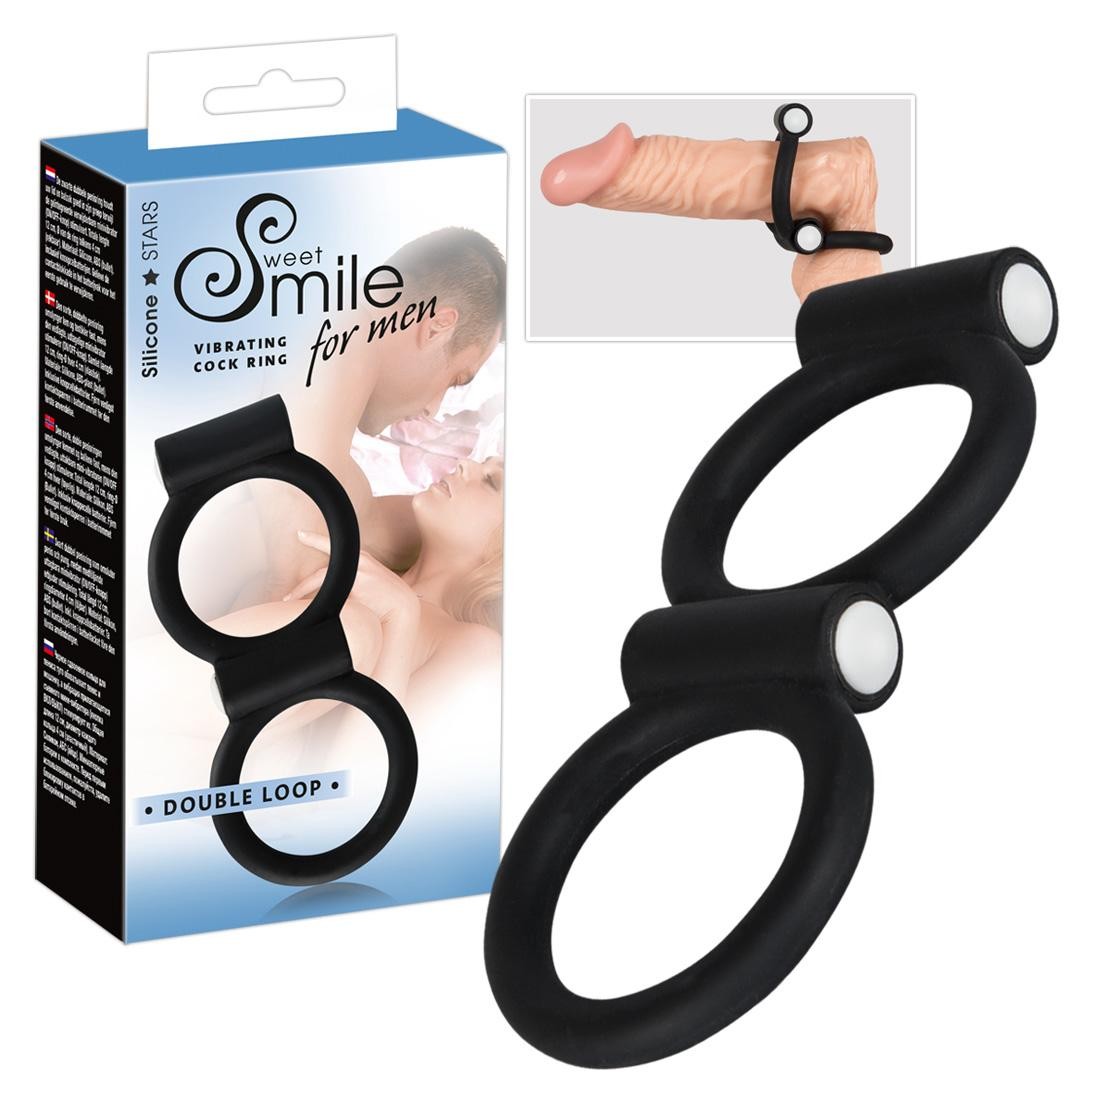  Sweet  Smile  -  Sweet  Smile  Double  Loop  -  vibrierender  Penisring 